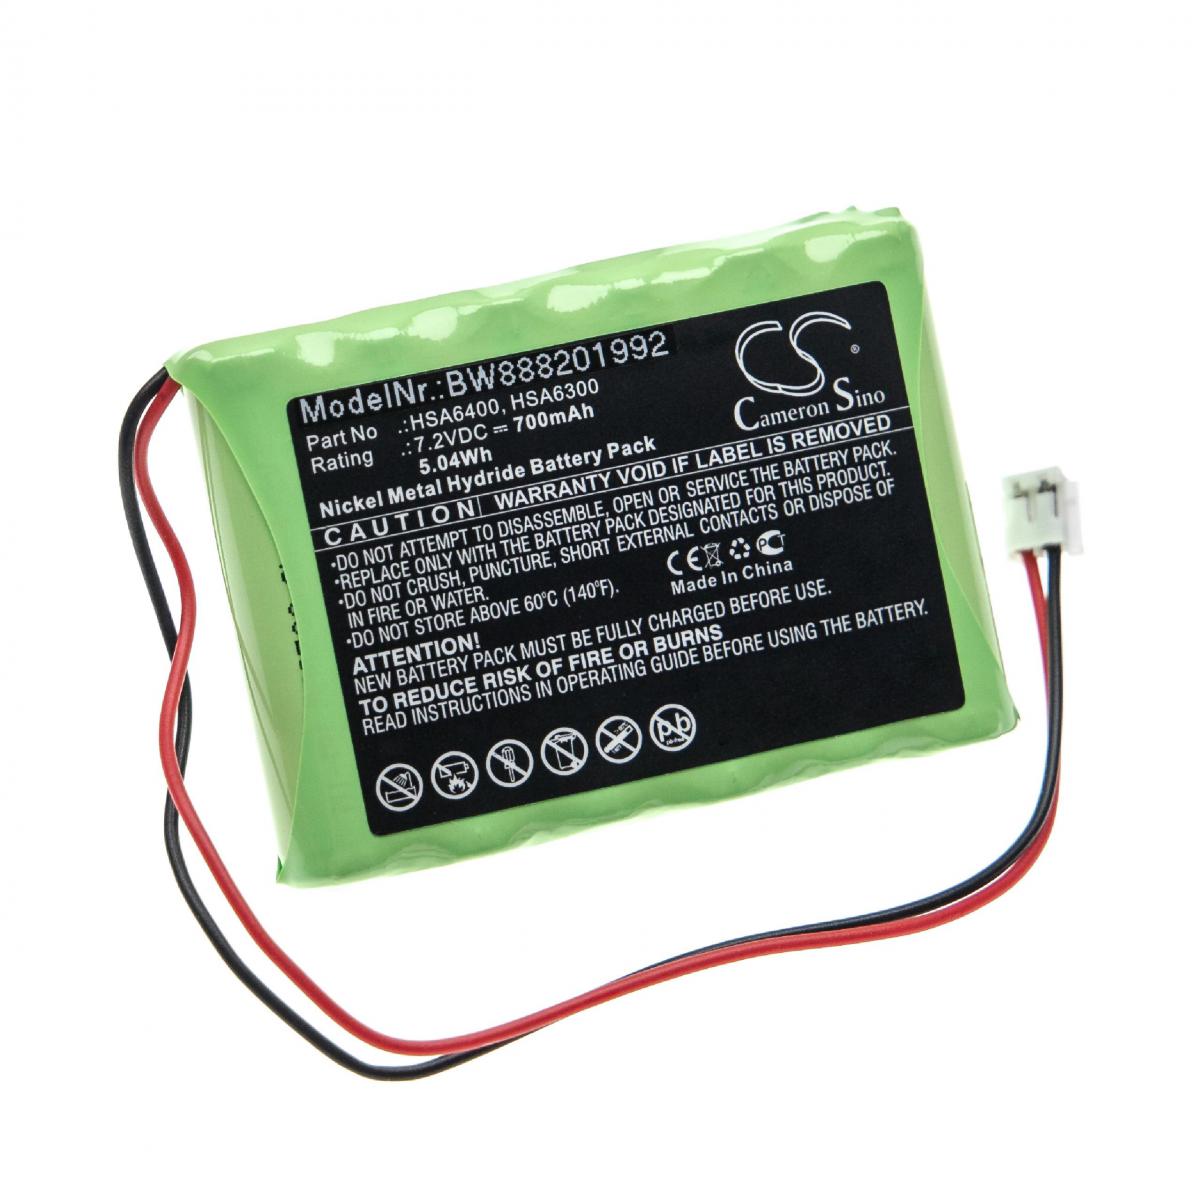 Vhbw - vhbw batterie compatible avec Yale Alarm control panels alarme maison/contrôle home security (700mAh, 7,2V, NiMH) - Autre appareil de mesure